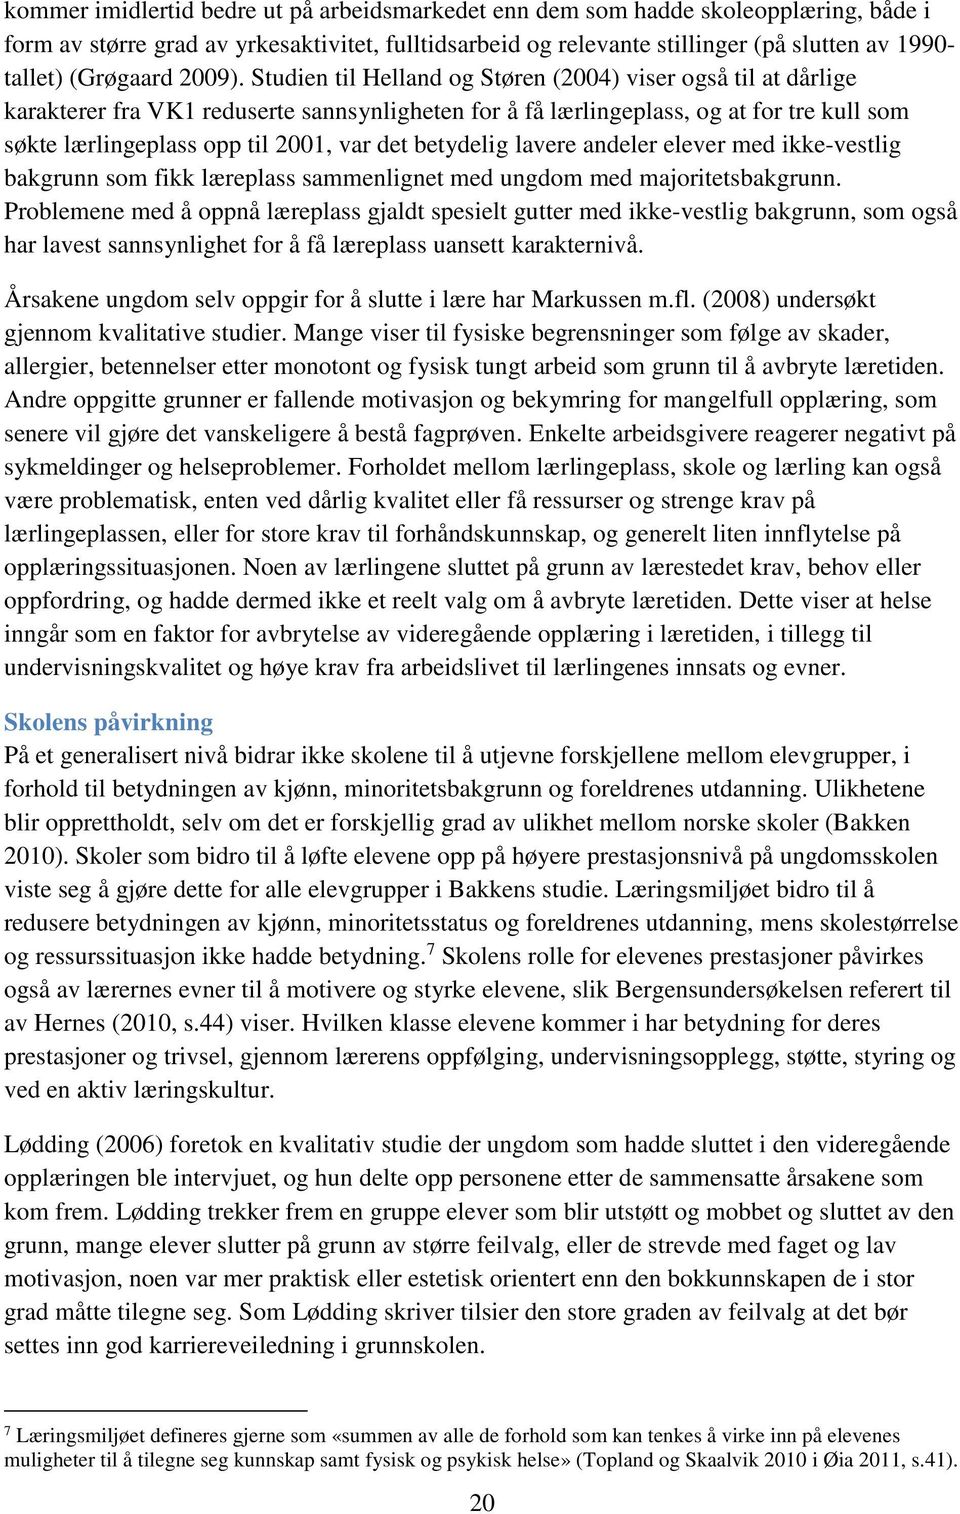 Studien til Helland og Støren (2004) viser også til at dårlige karakterer fra VK1 reduserte sannsynligheten for å få lærlingeplass, og at for tre kull som søkte lærlingeplass opp til 2001, var det